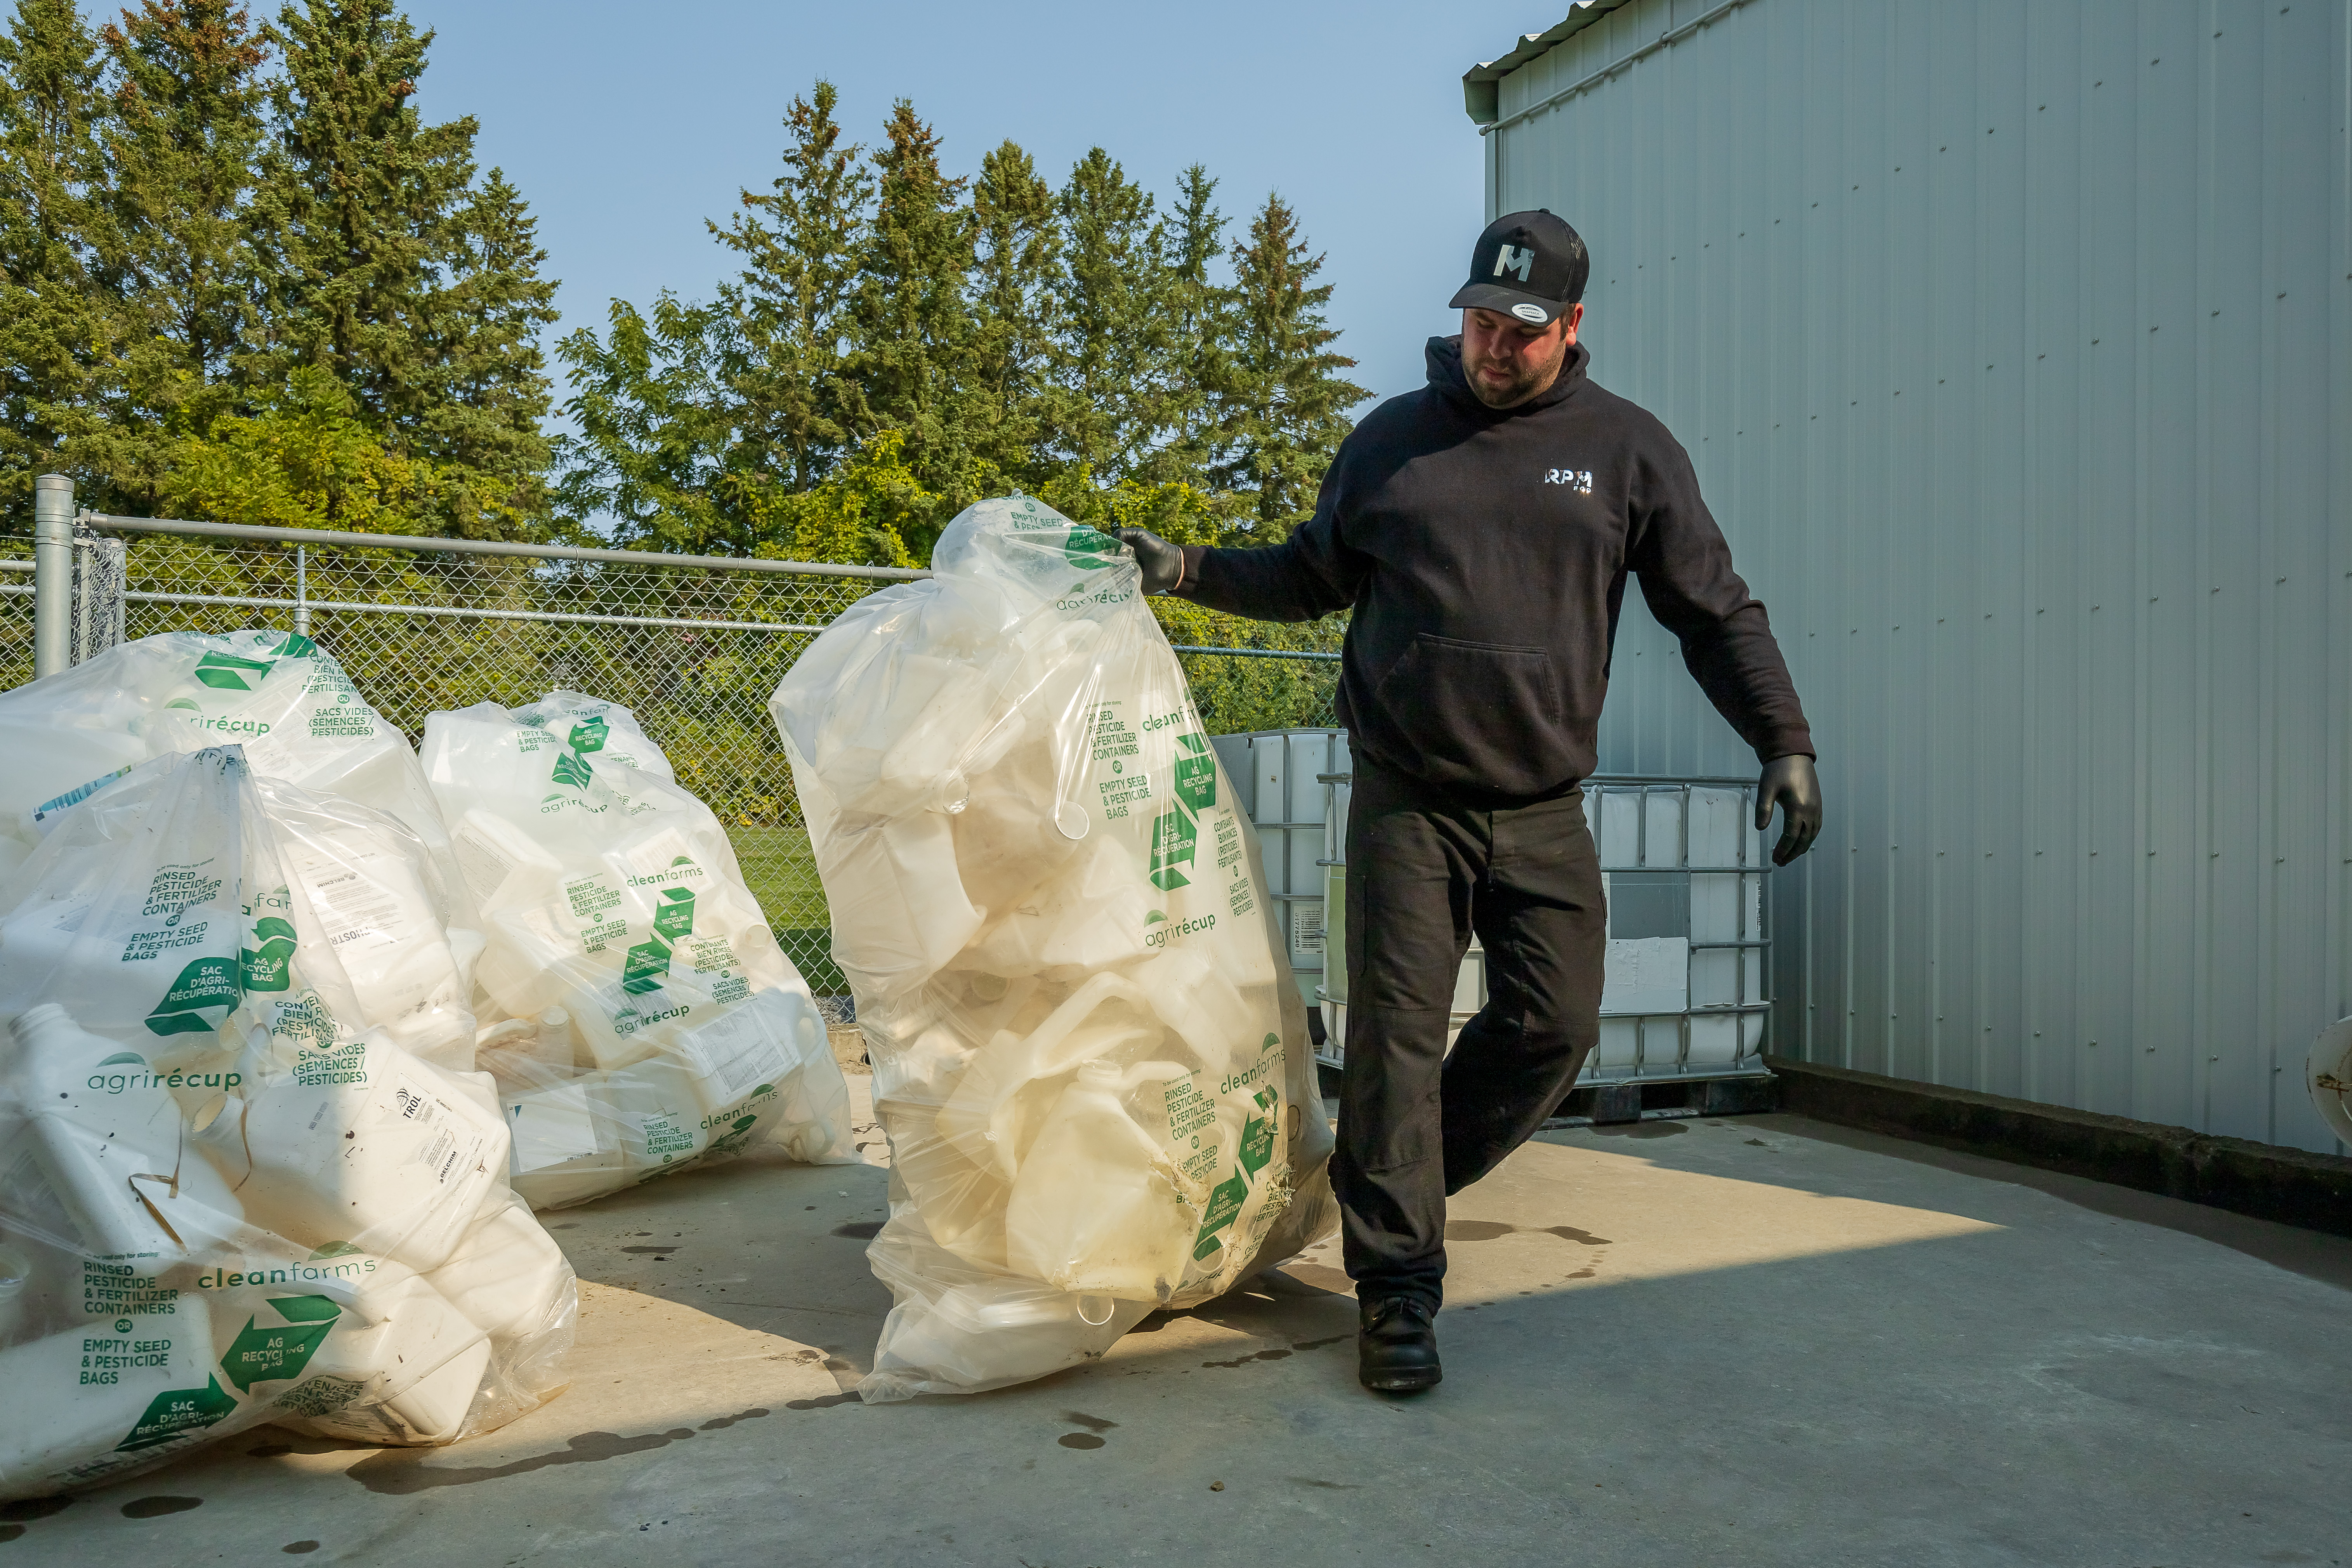 Collecte des contenants en plastique ag pour le recyclage